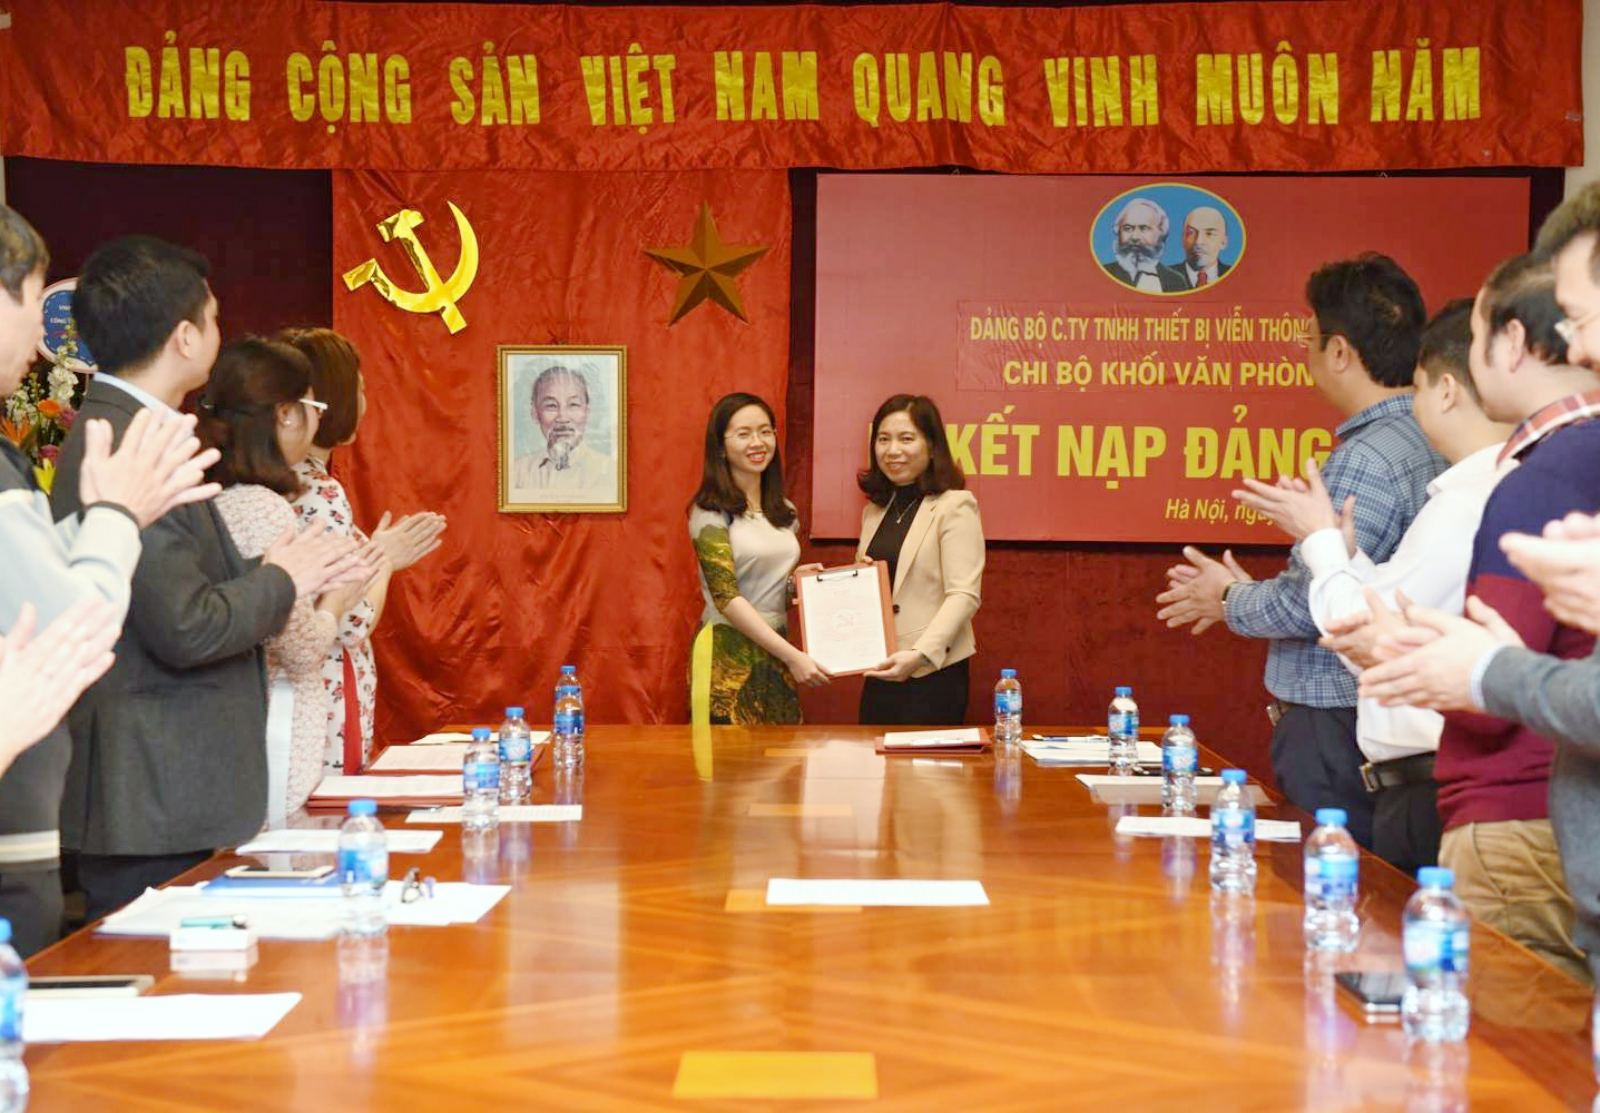 Đồng chí Khúc Thị Thu Nga – Bí thư chi bộ Văn Phòng trao Quyết định kết nạp đảng cho đồng chí Lê Minh Hạnh.